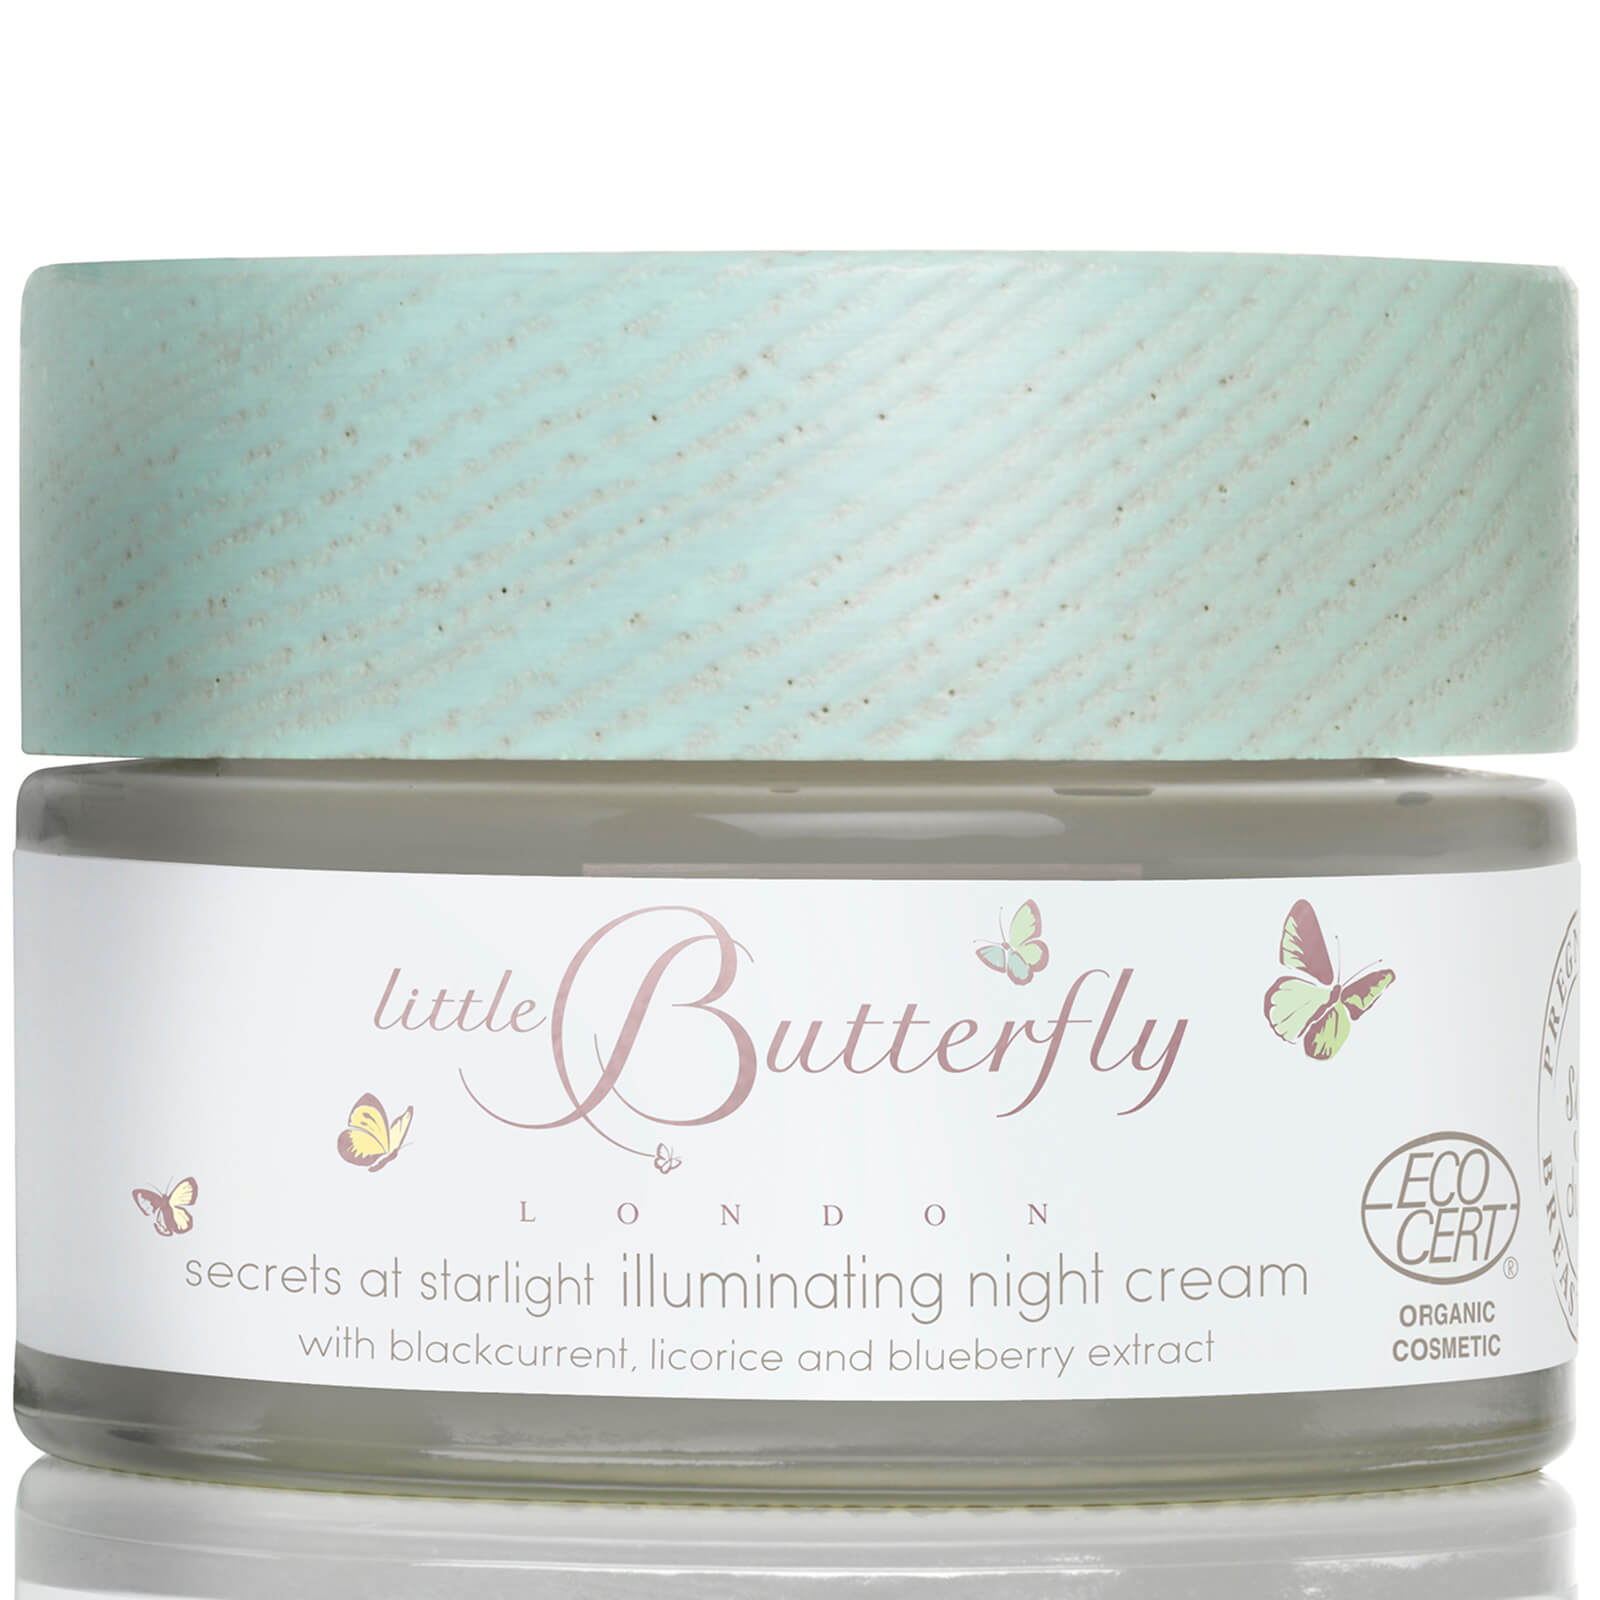 Little Butterfly London Secrets at Starlight Illuminating Night Cream 50ml